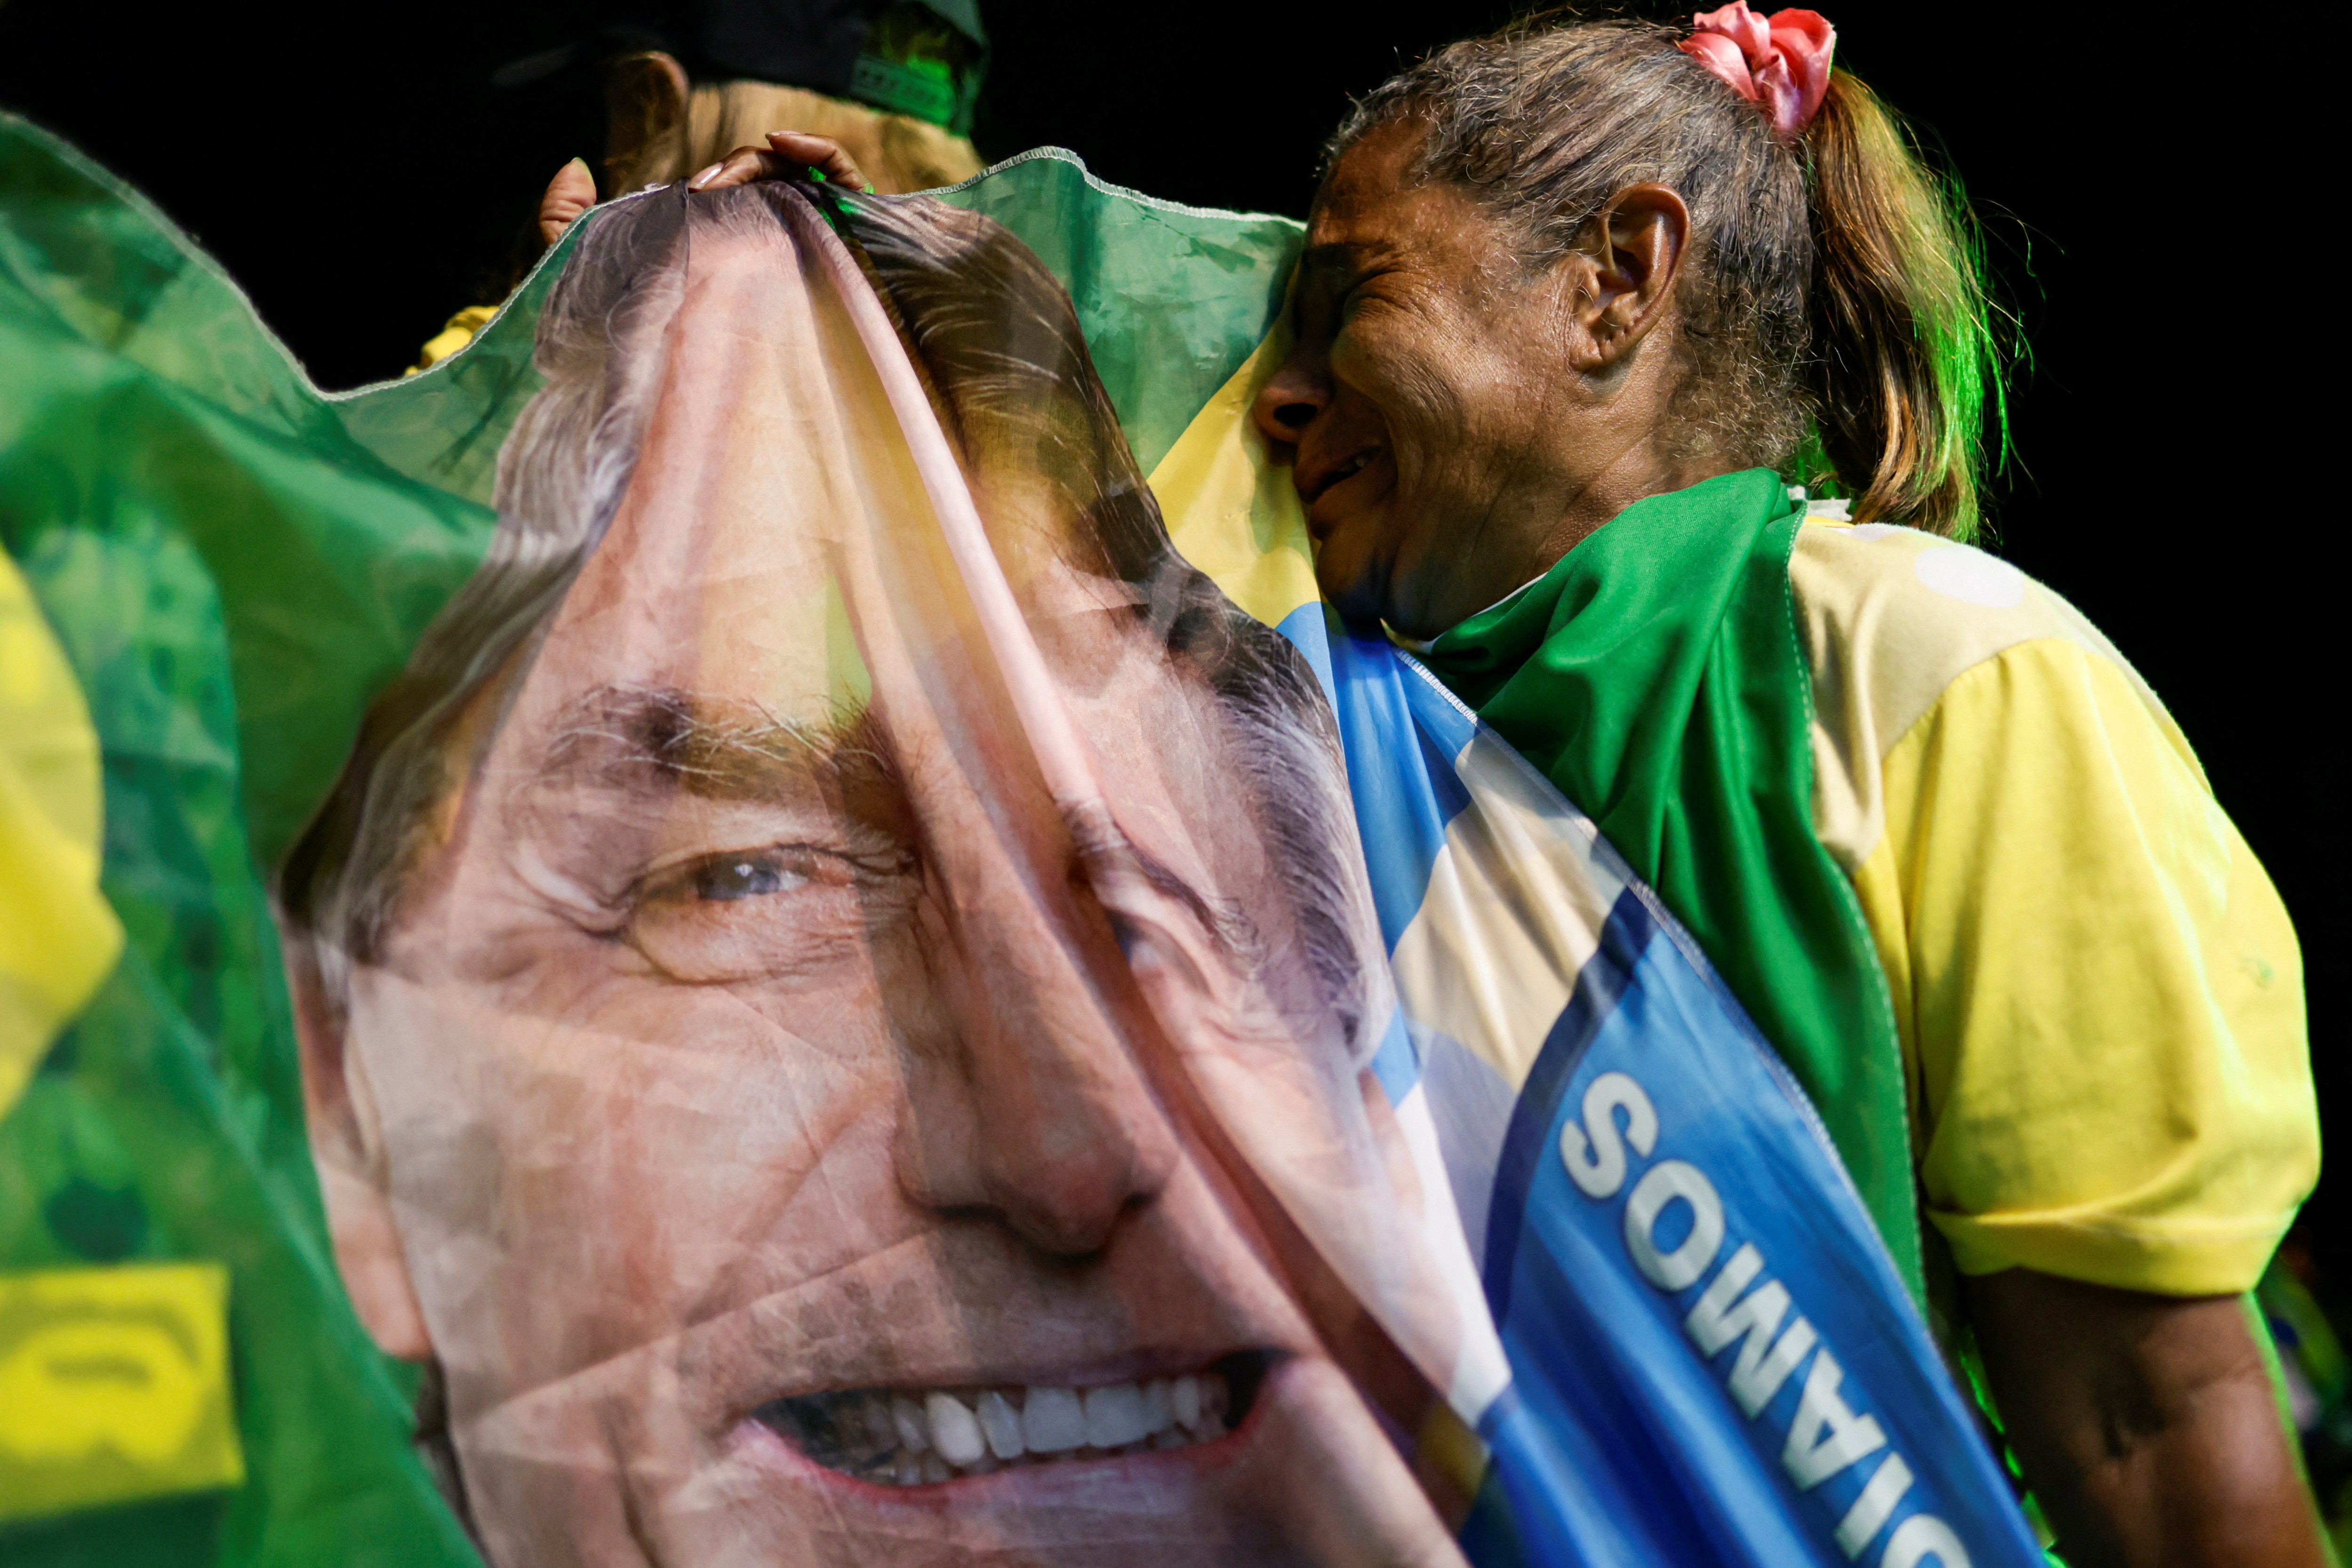 Bolsonaro, quien se ha mantenido casi ausente de la vida pública desde la derrota, ha cuestionado en reiteradas oportunidades al sistema electoral sin presentar pruebas. (REUTERS)